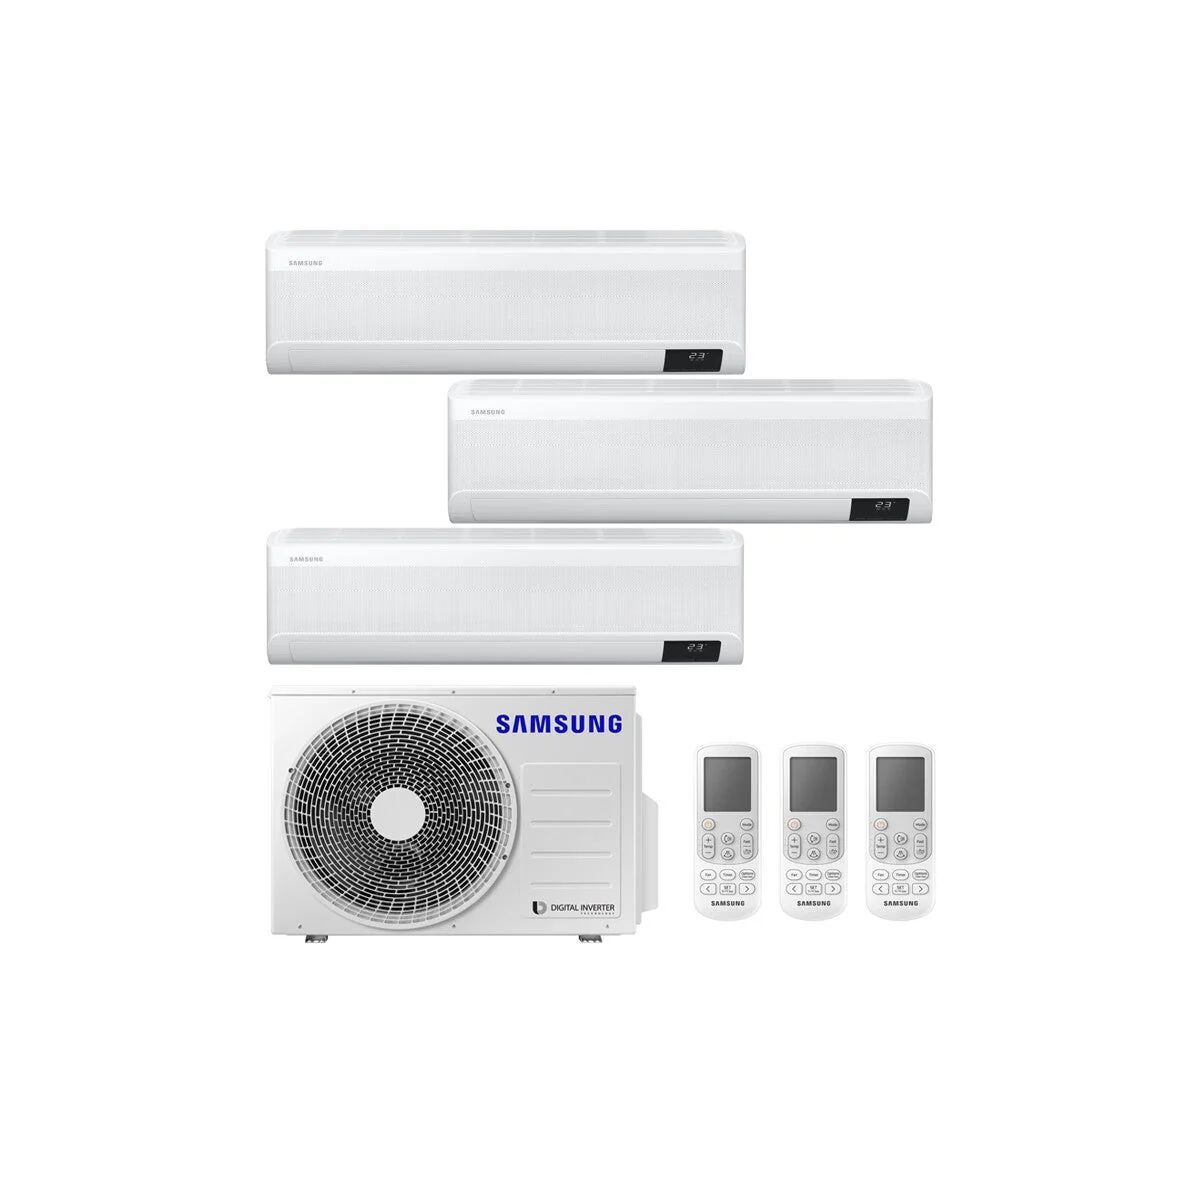 Condizionatore Samsung Windfree Avant Trial Split 7000+7000+7000 Btu Inverter R32 Aj052 A++/A+ Wifi